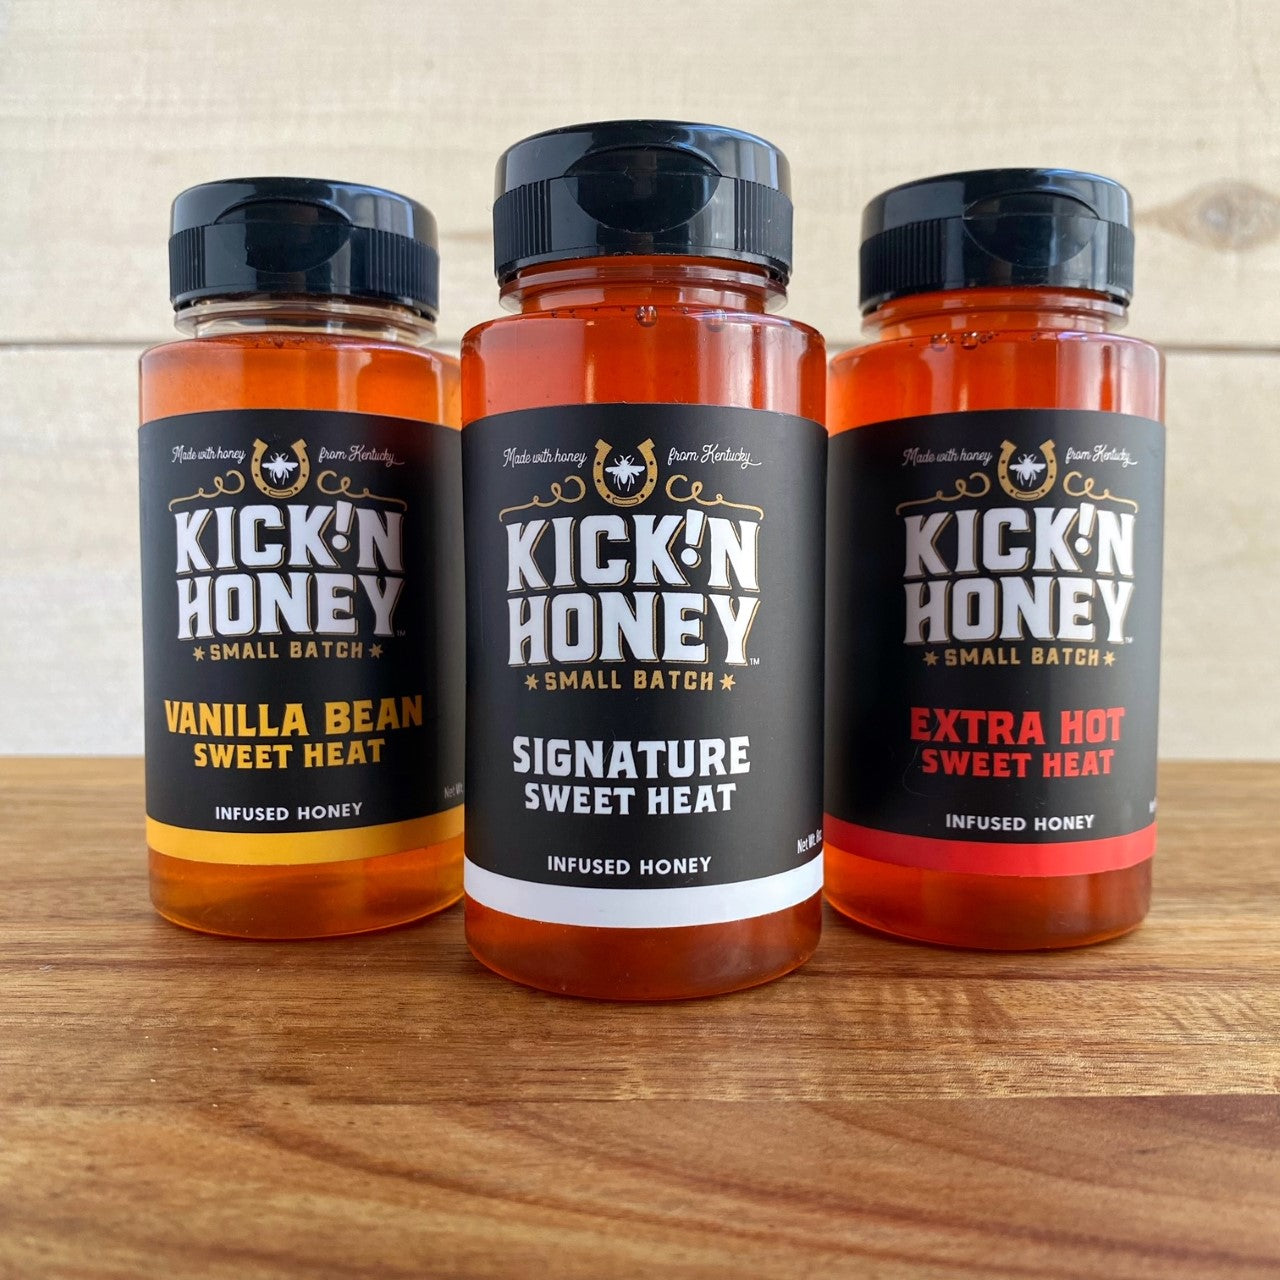 The three stars of Hot Honey in one box.